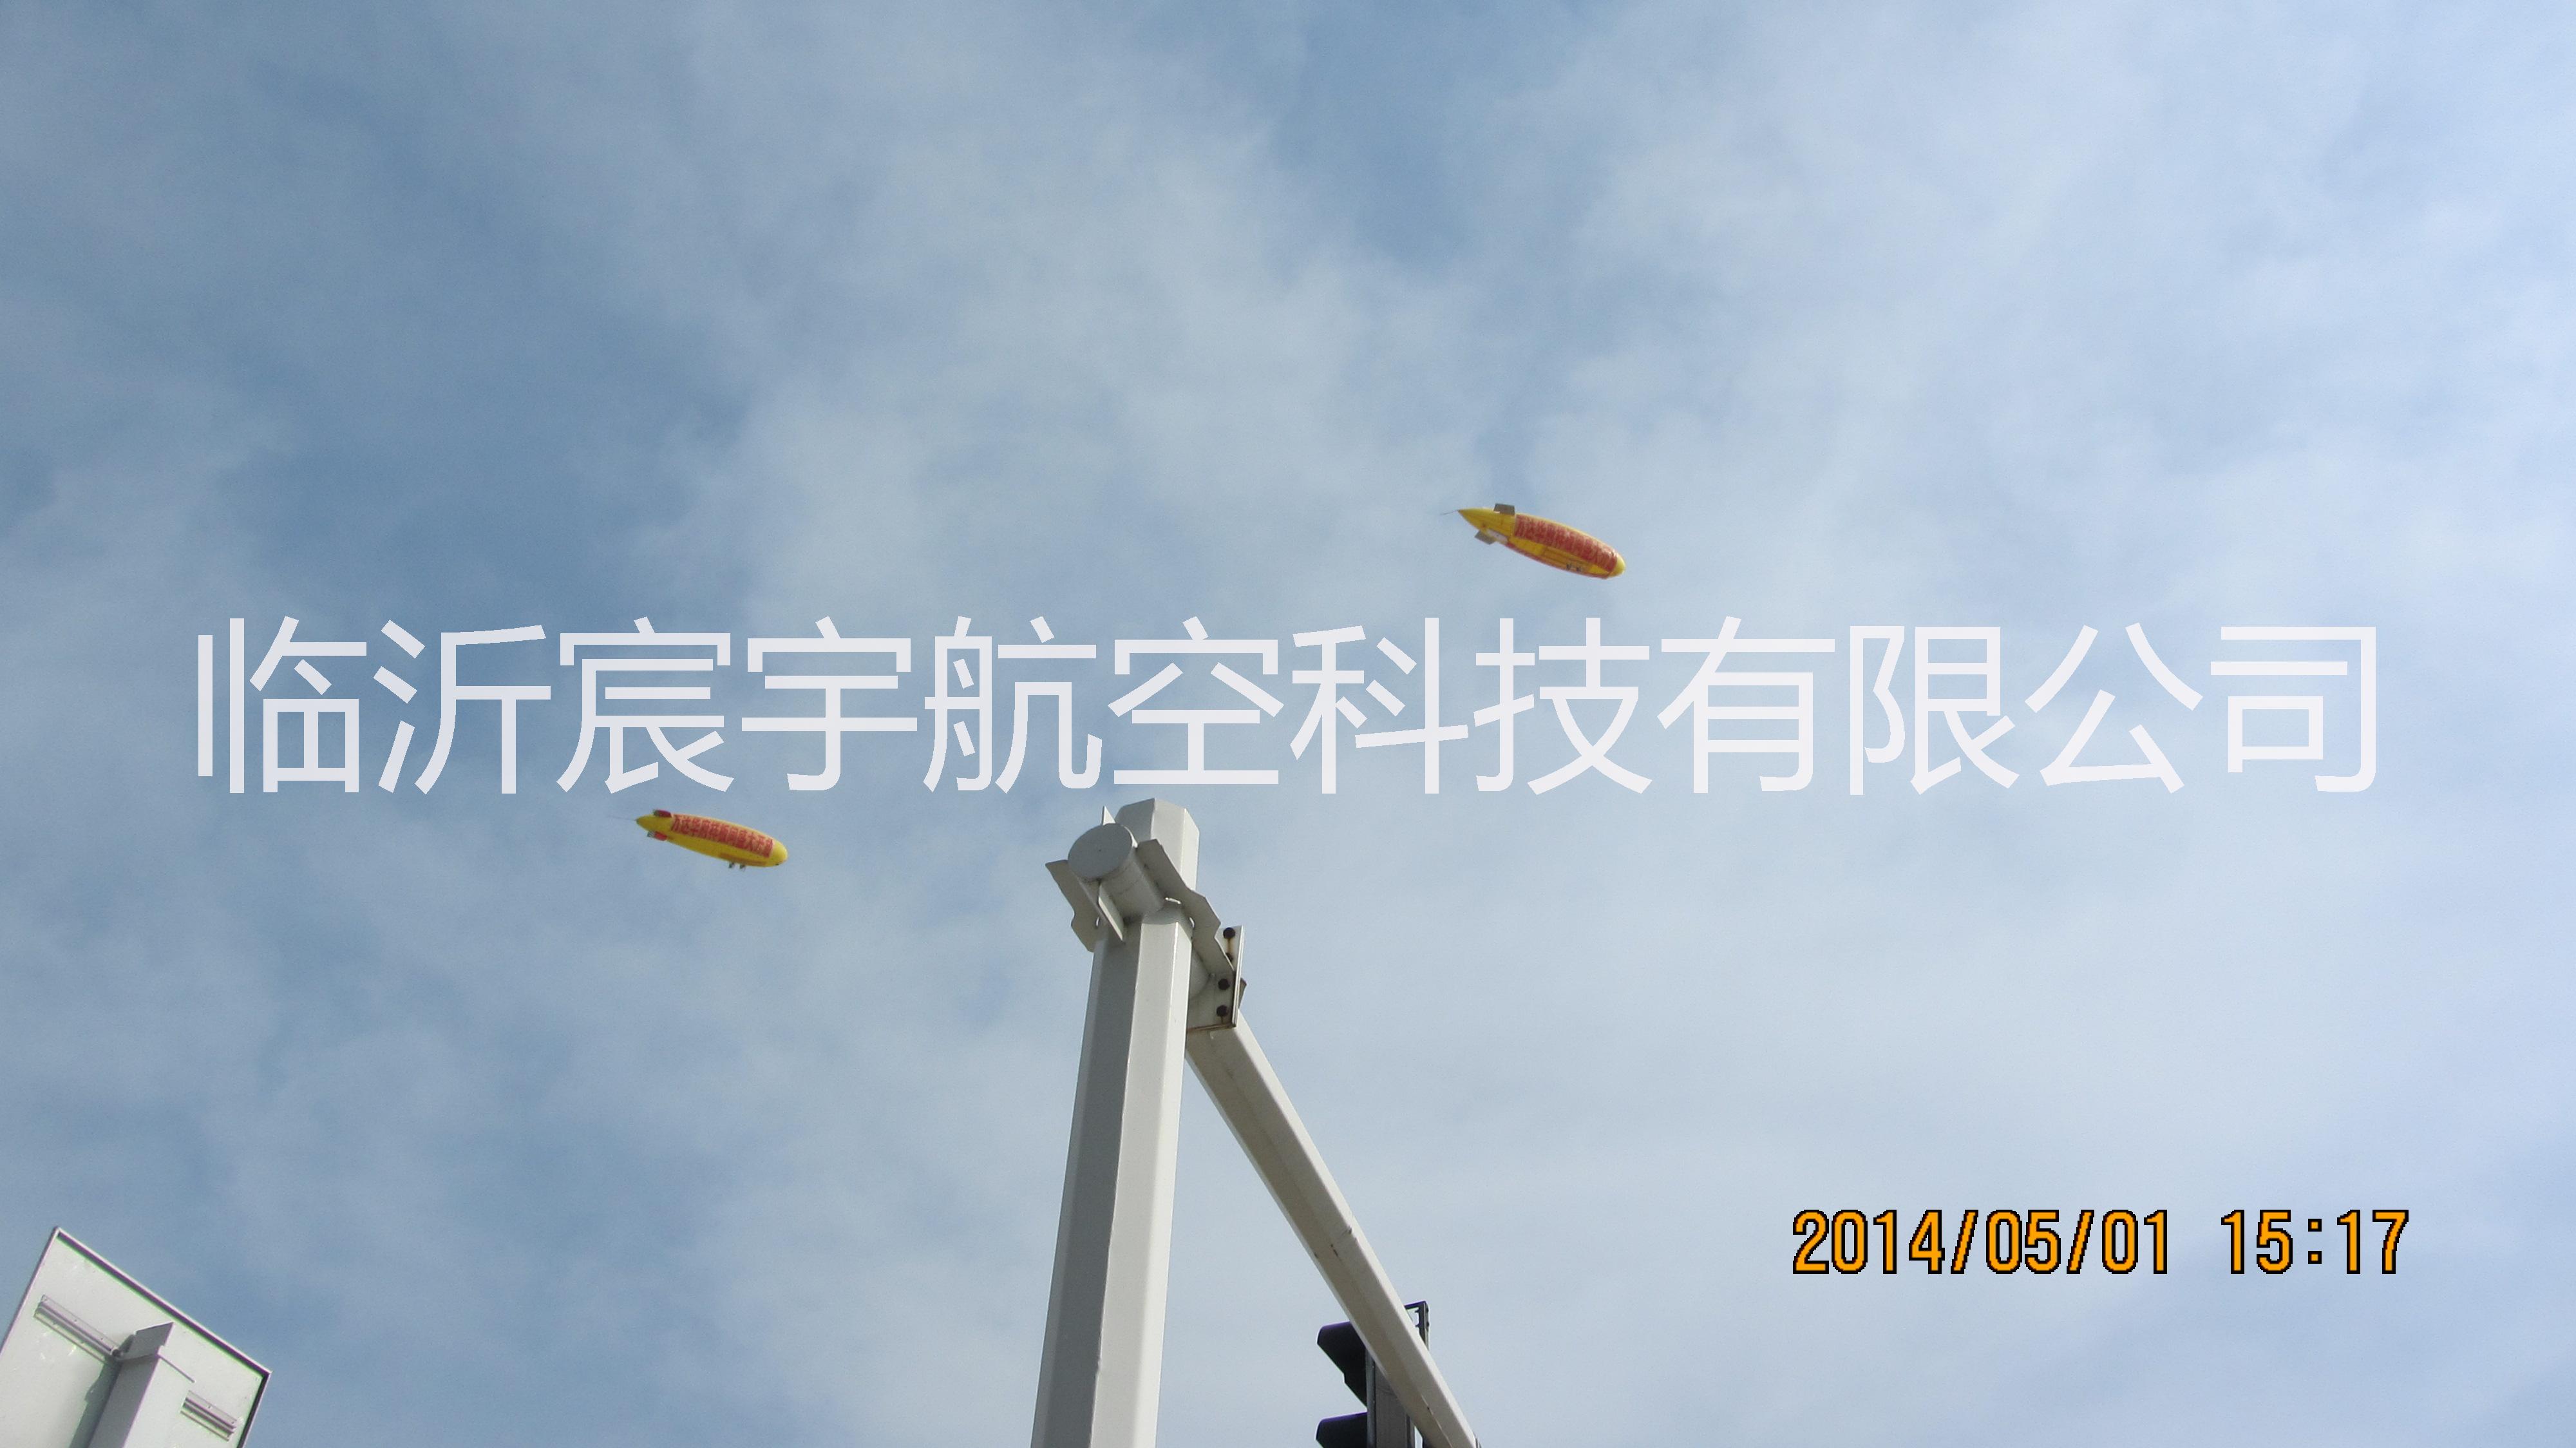 供应江西飞艇租赁/江西飞艇广告，江西热气球公司，江西直升机公司图片